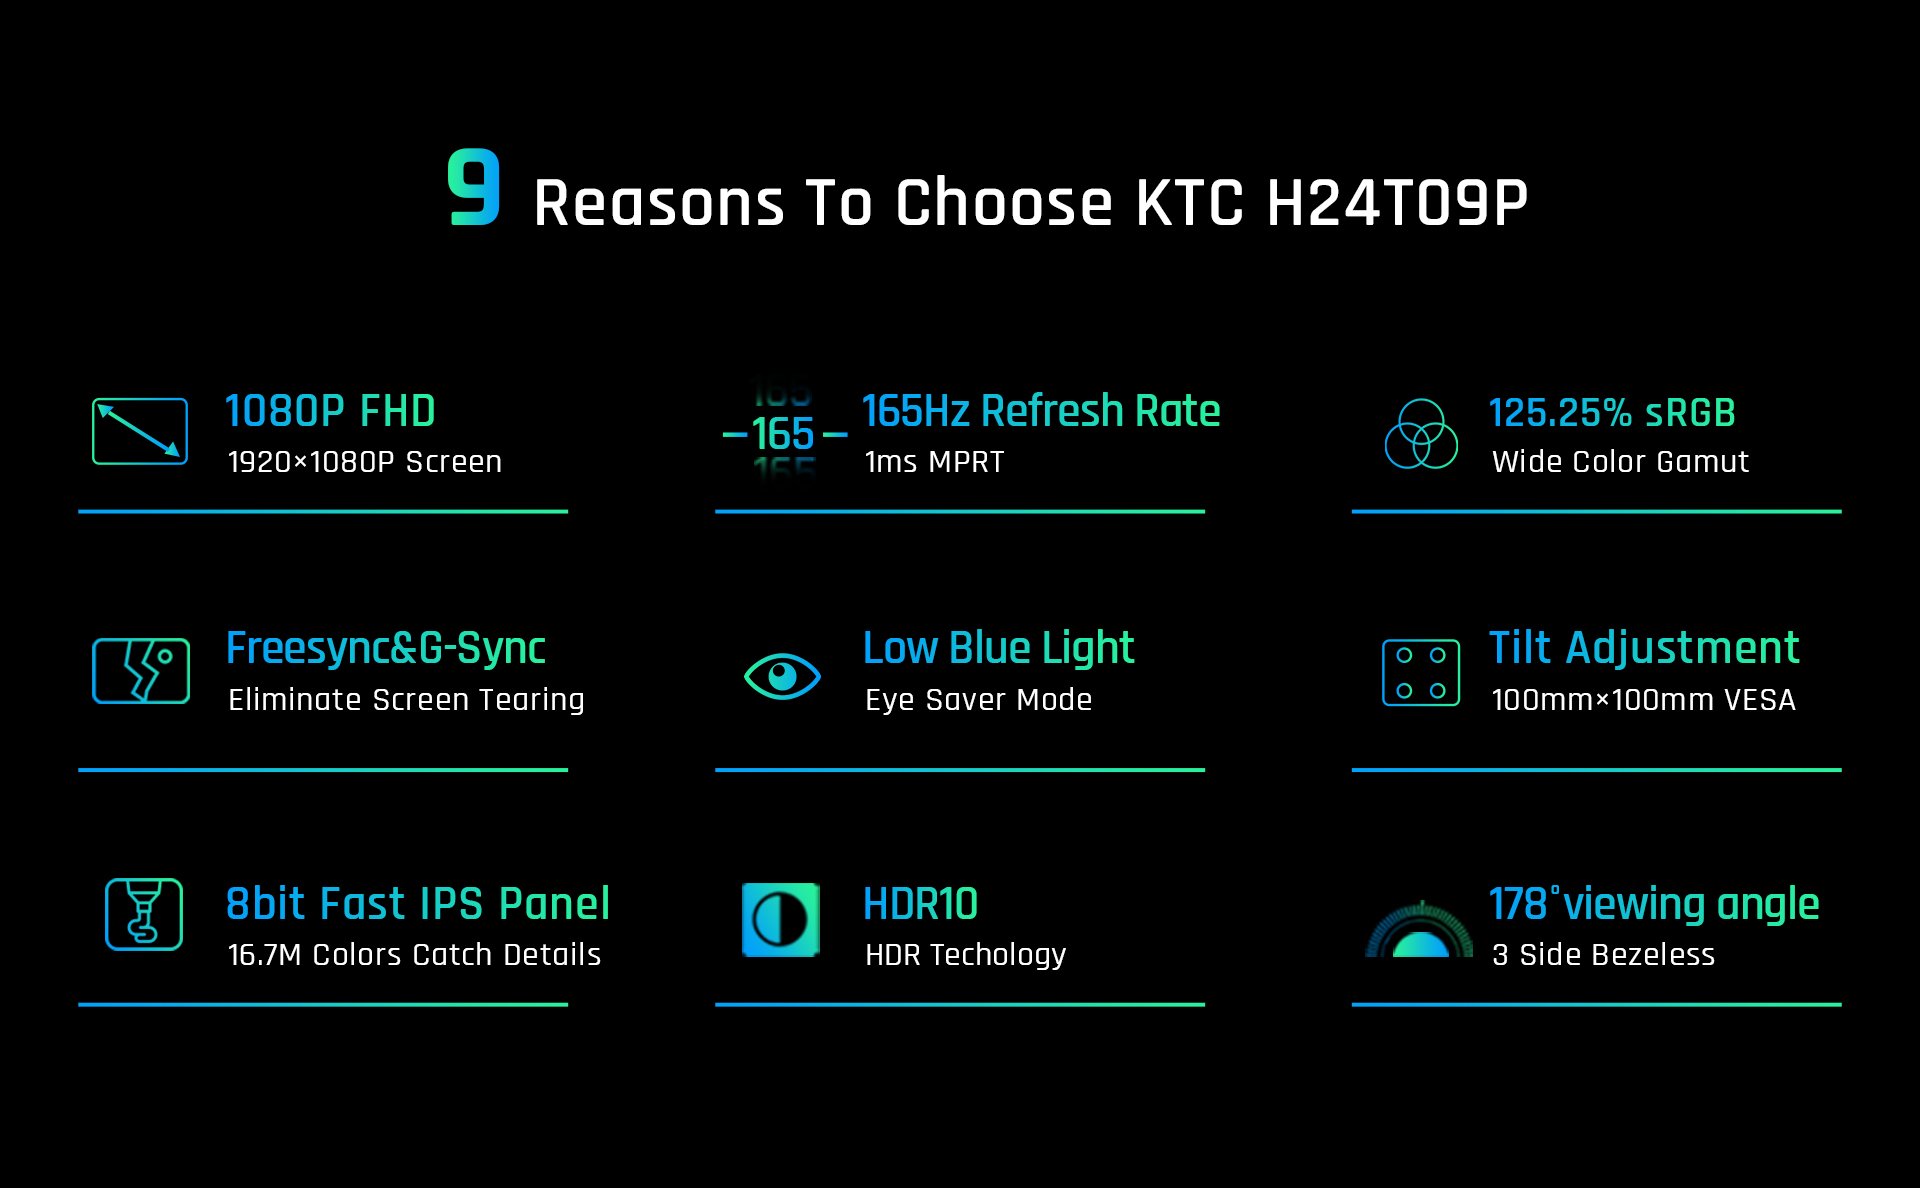 KTC 24 Ecran PC Gaming, Fast IPS 165Hz Moniteur Gamer, FHD 1920x1080, 1ms,  125.25% sRGB, HDR10, Freesync & G-Sync, réduction de la lumière Bleue,  DP1.2, HDMI2.0, H24T09P 